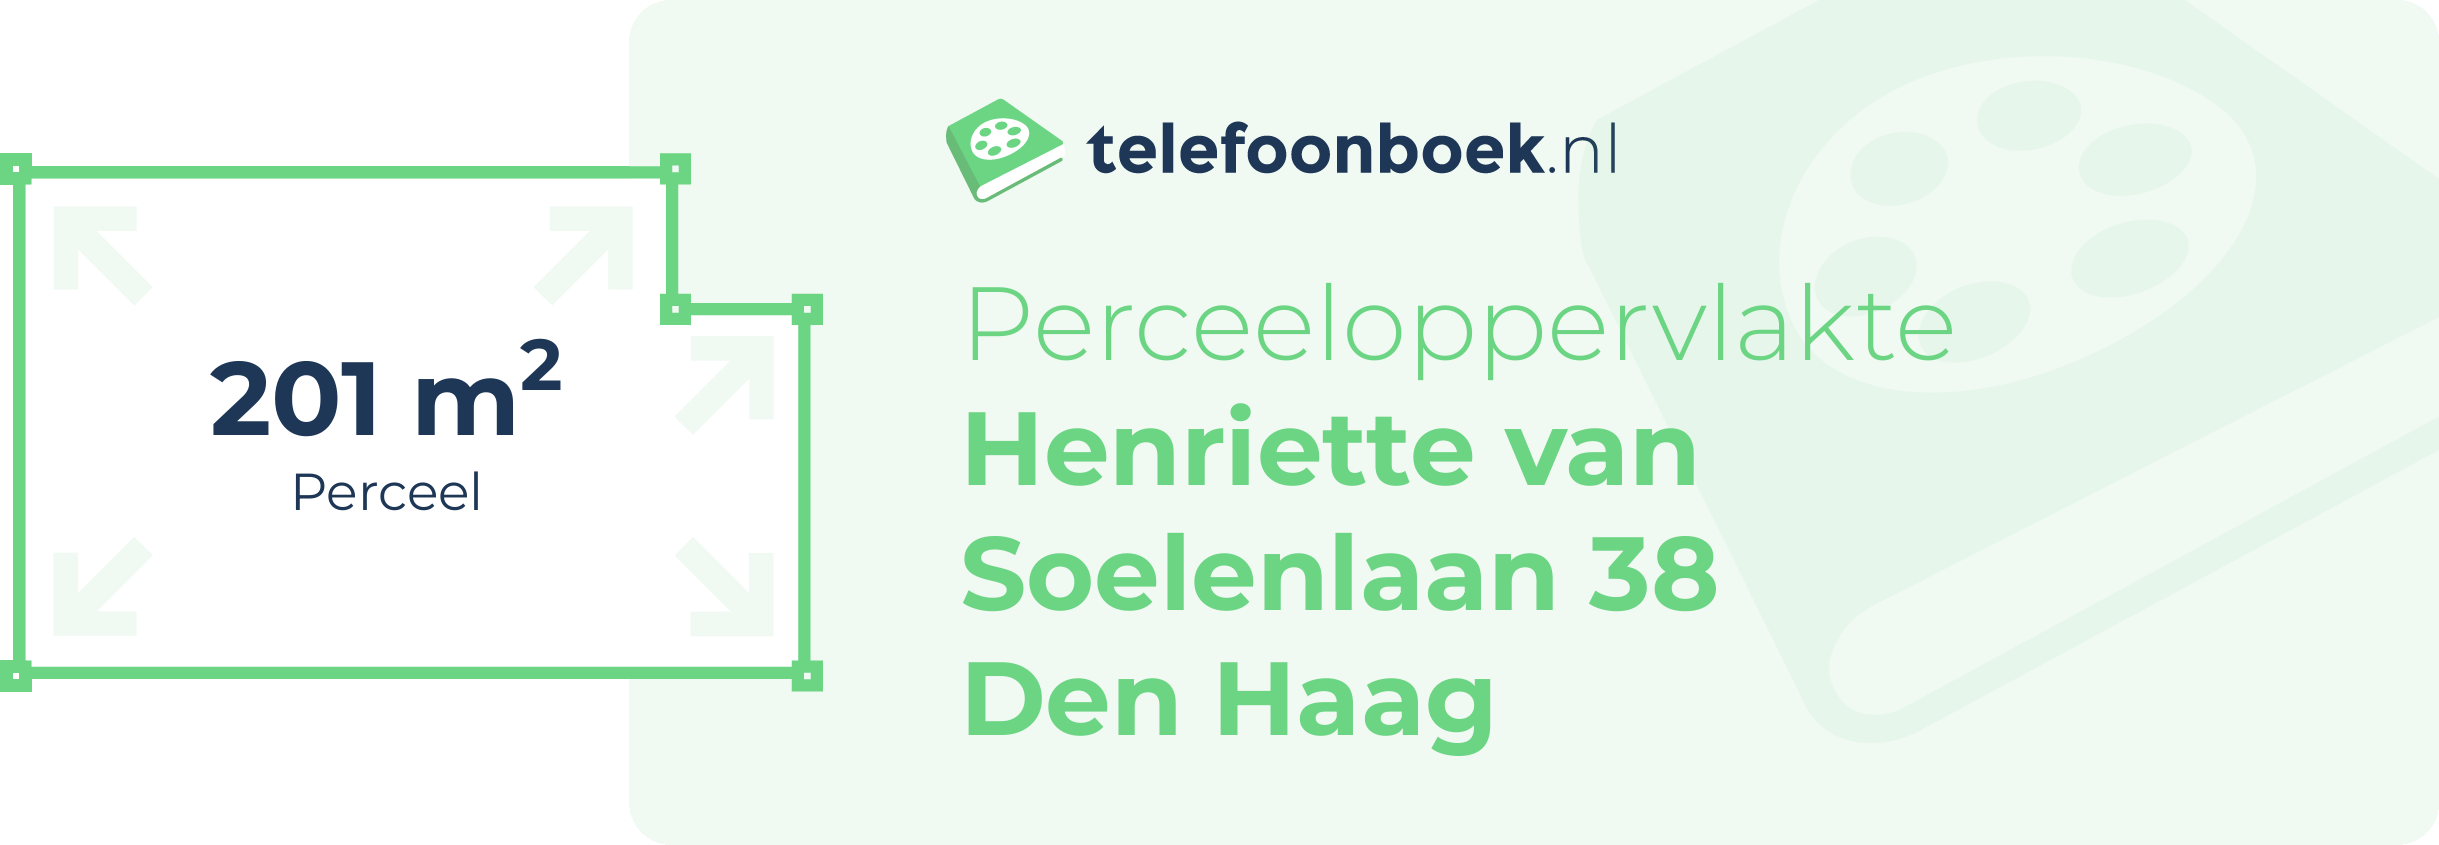 Perceeloppervlakte Henriette Van Soelenlaan 38 Den Haag